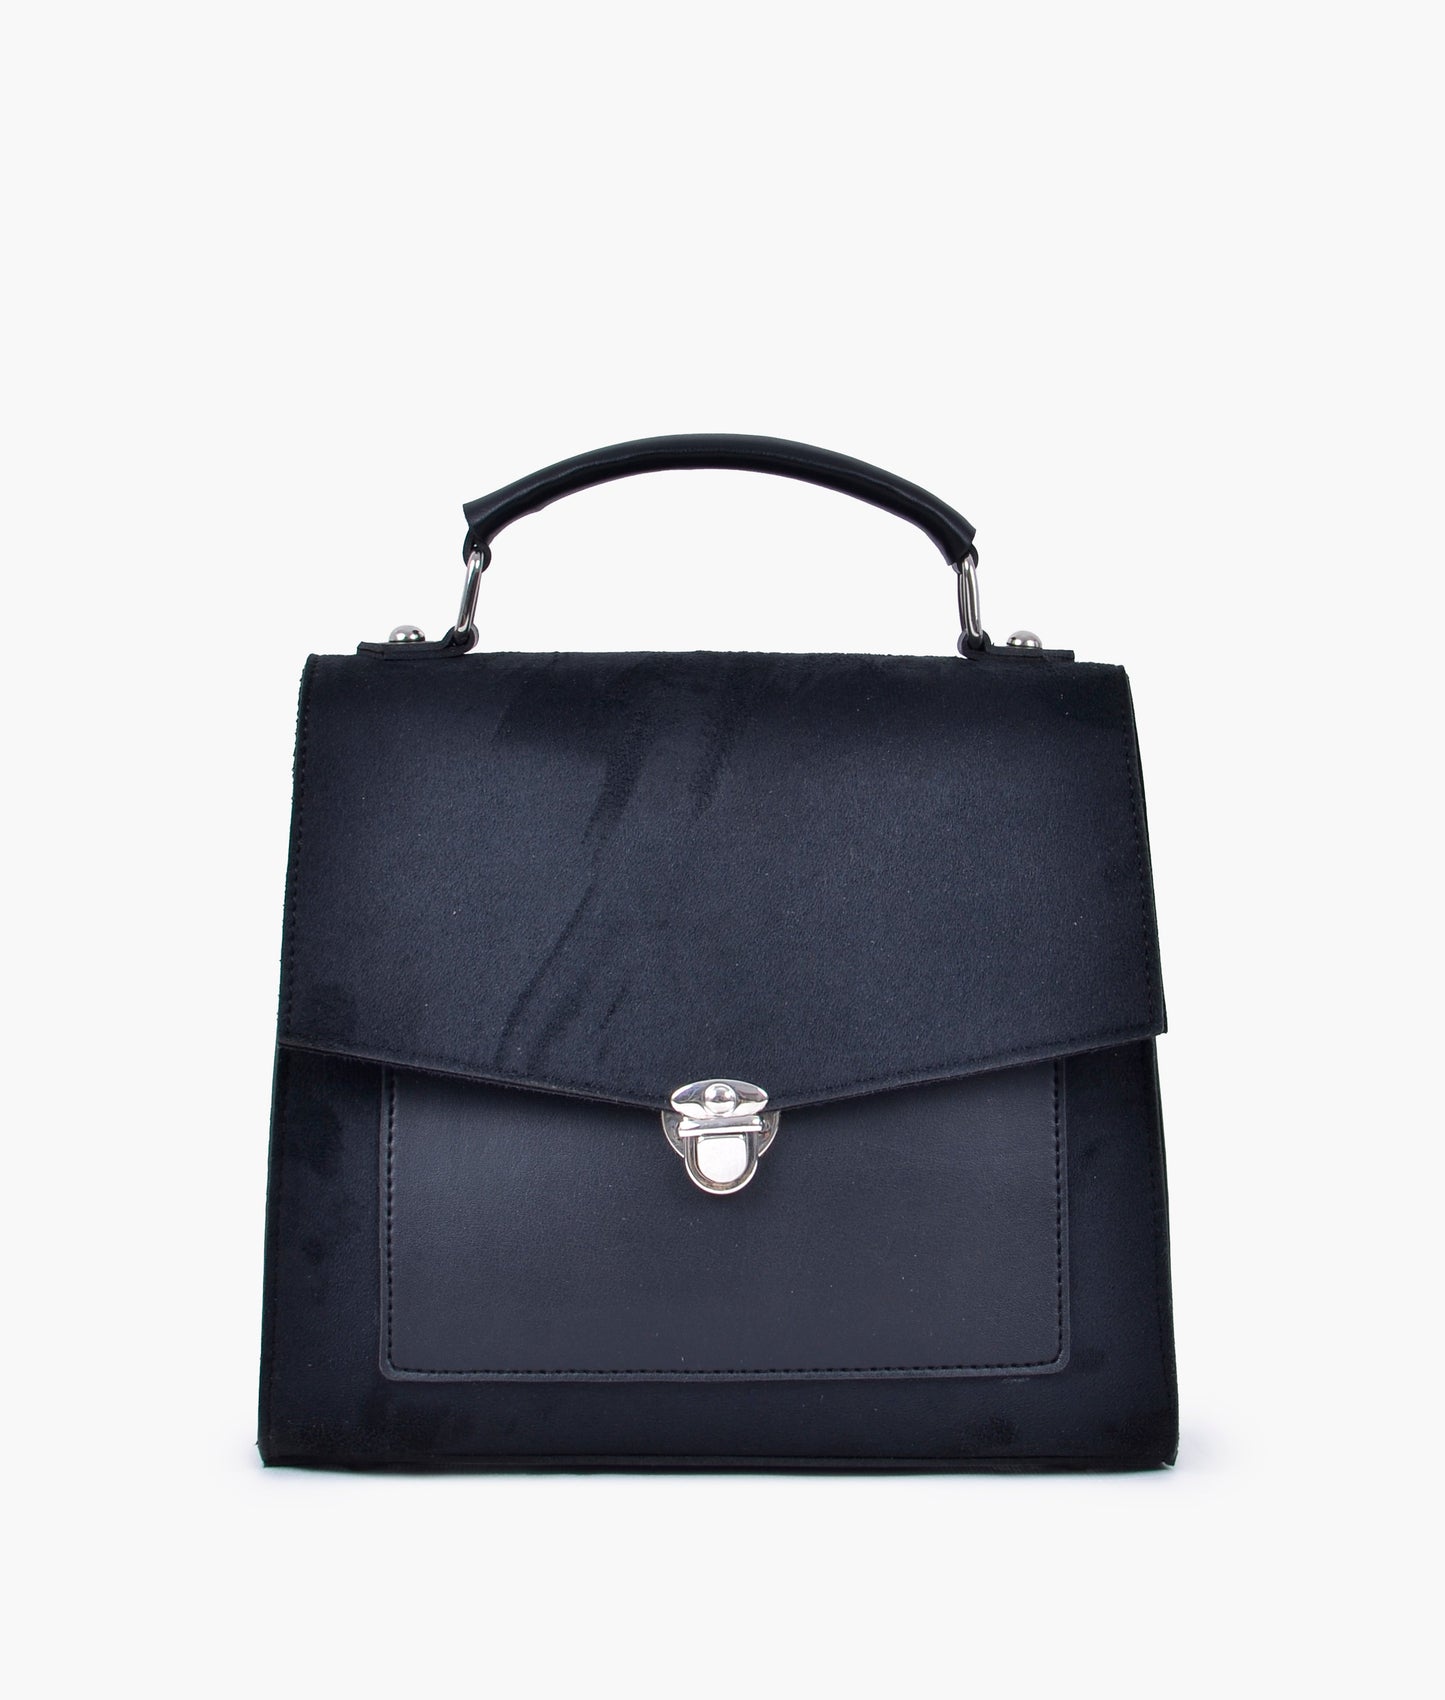 Black Handbag For Women 4192